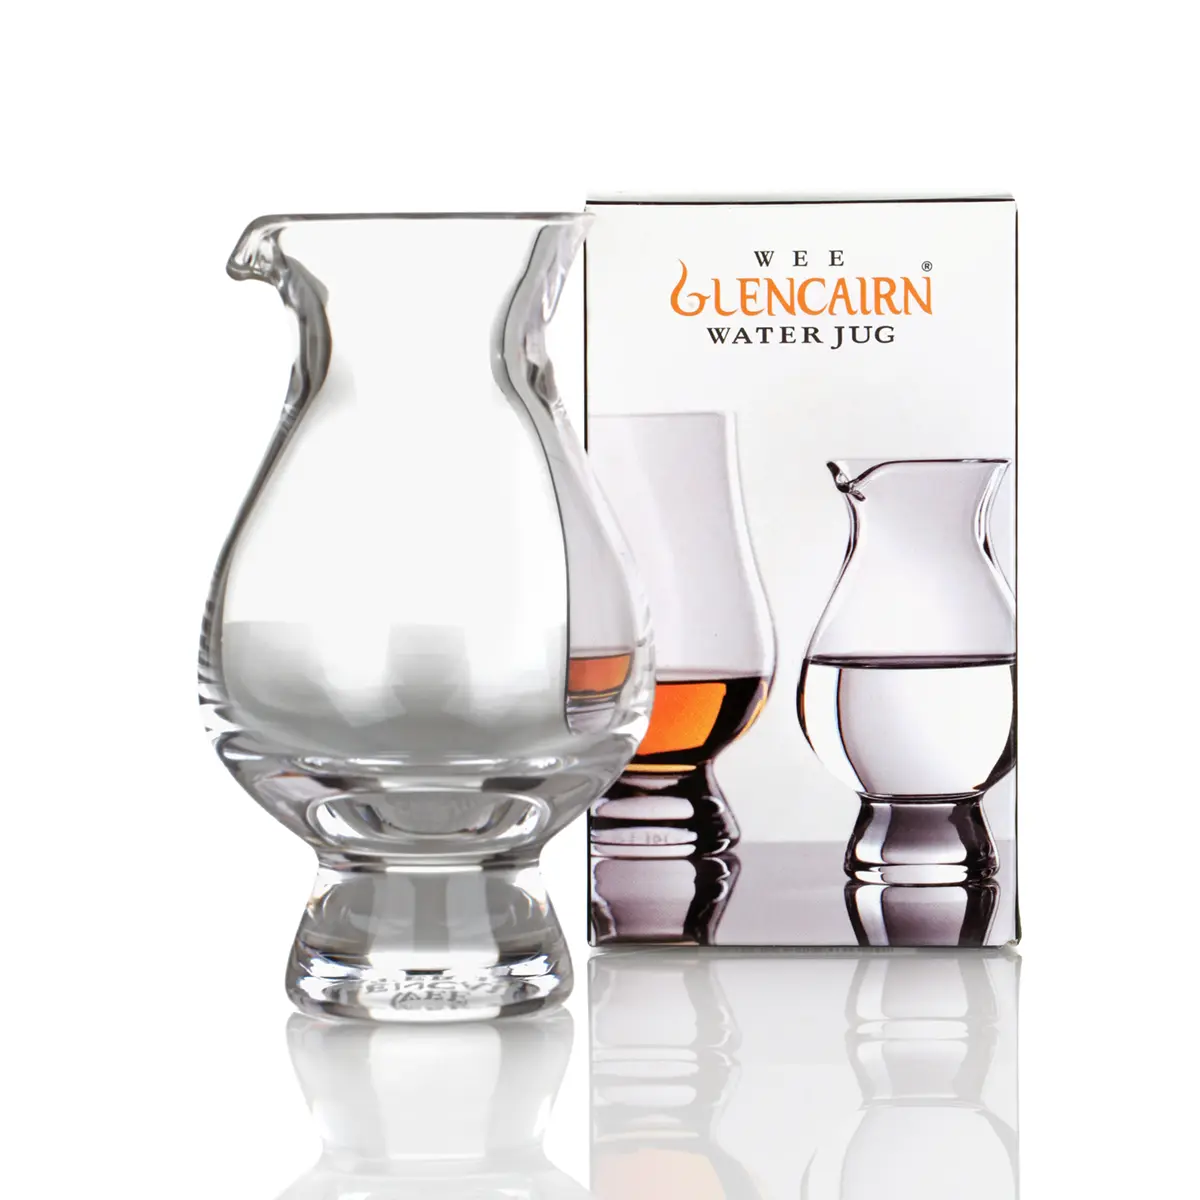 Wee Glencairn Water Jug - Whisky Wasserkrug /  Karaffe aus Schottland